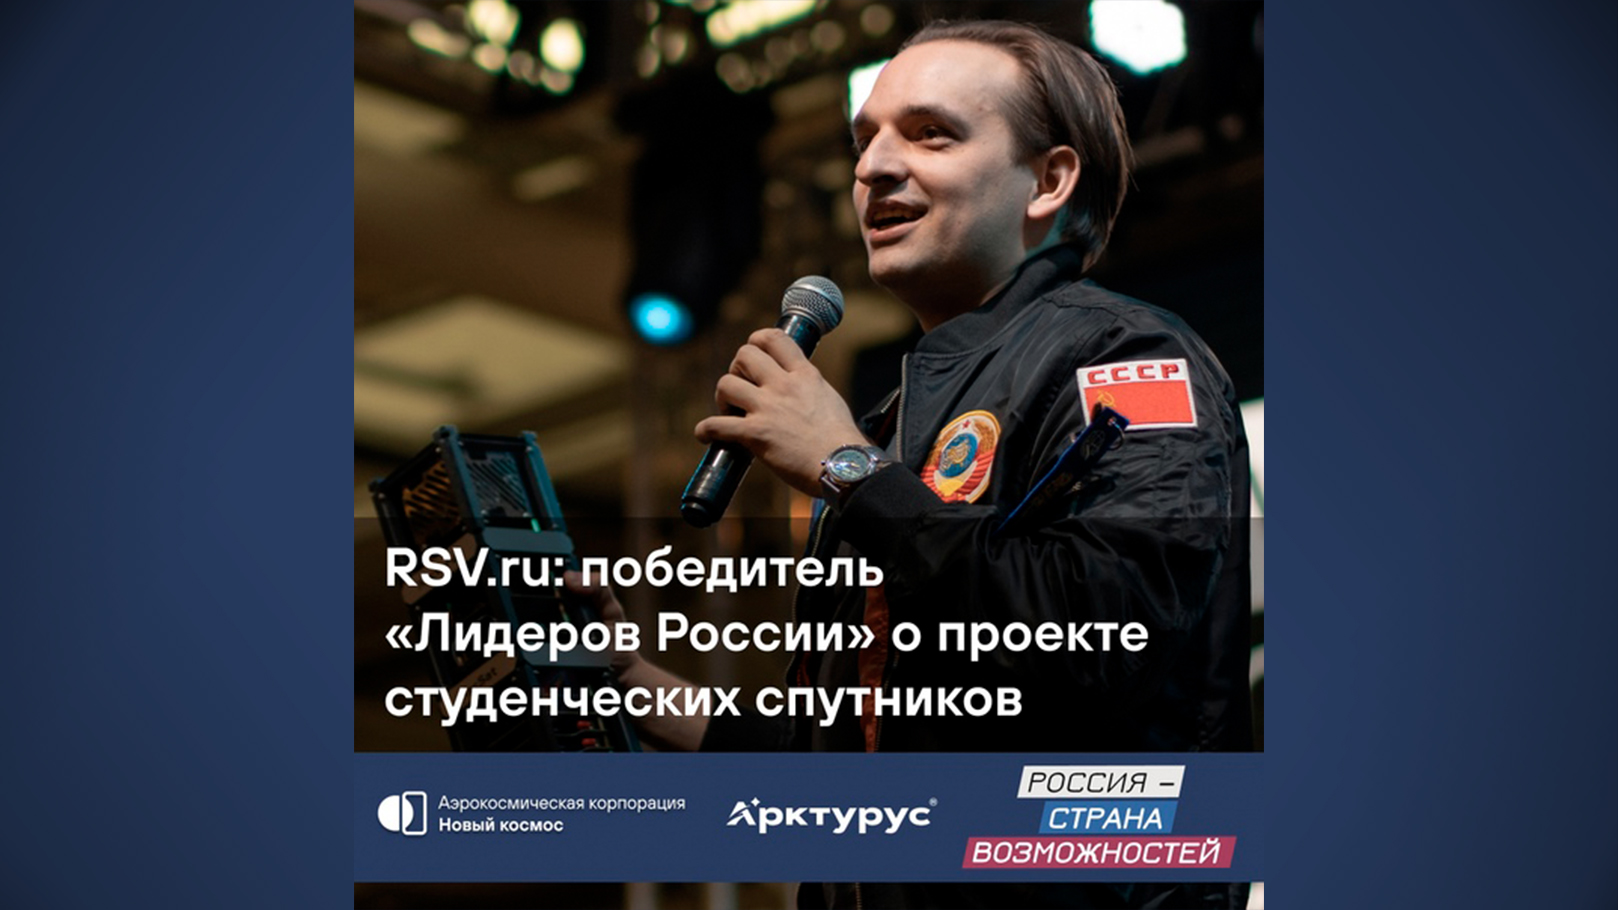 RSV.ru: победитель «Лидеры России» о проекте студенческих спутников